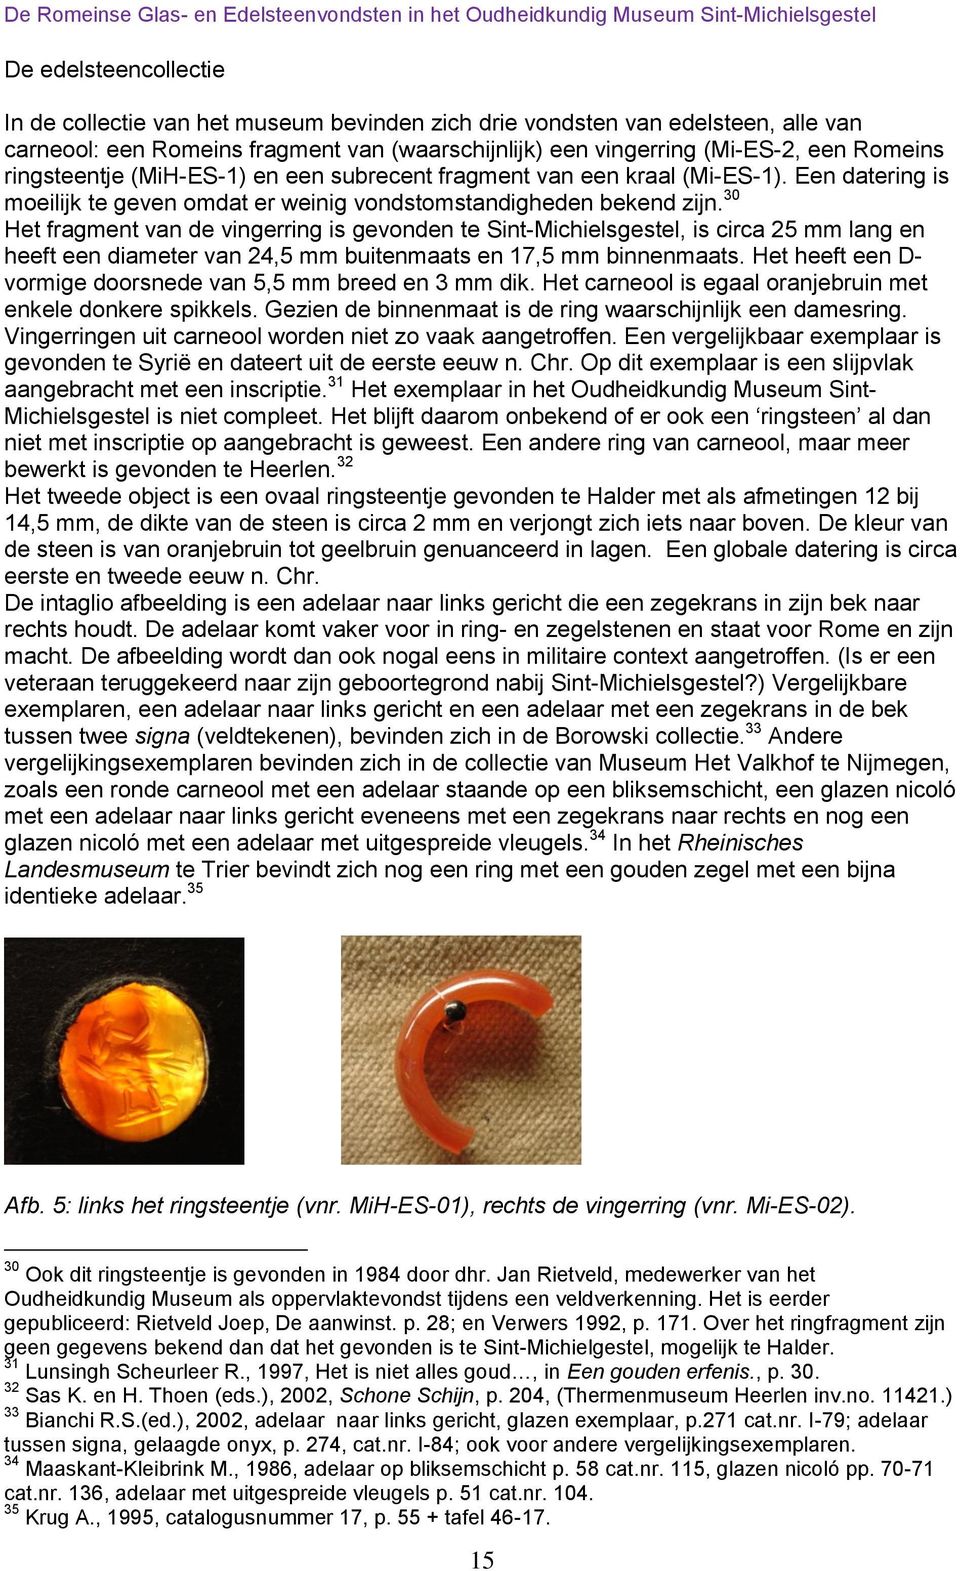 30 Het fragment van de vingerring is gevonden te Sint-Michielsgestel, is circa 25 mm lang en heeft een diameter van 24,5 mm buitenmaats en 17,5 mm binnenmaats.